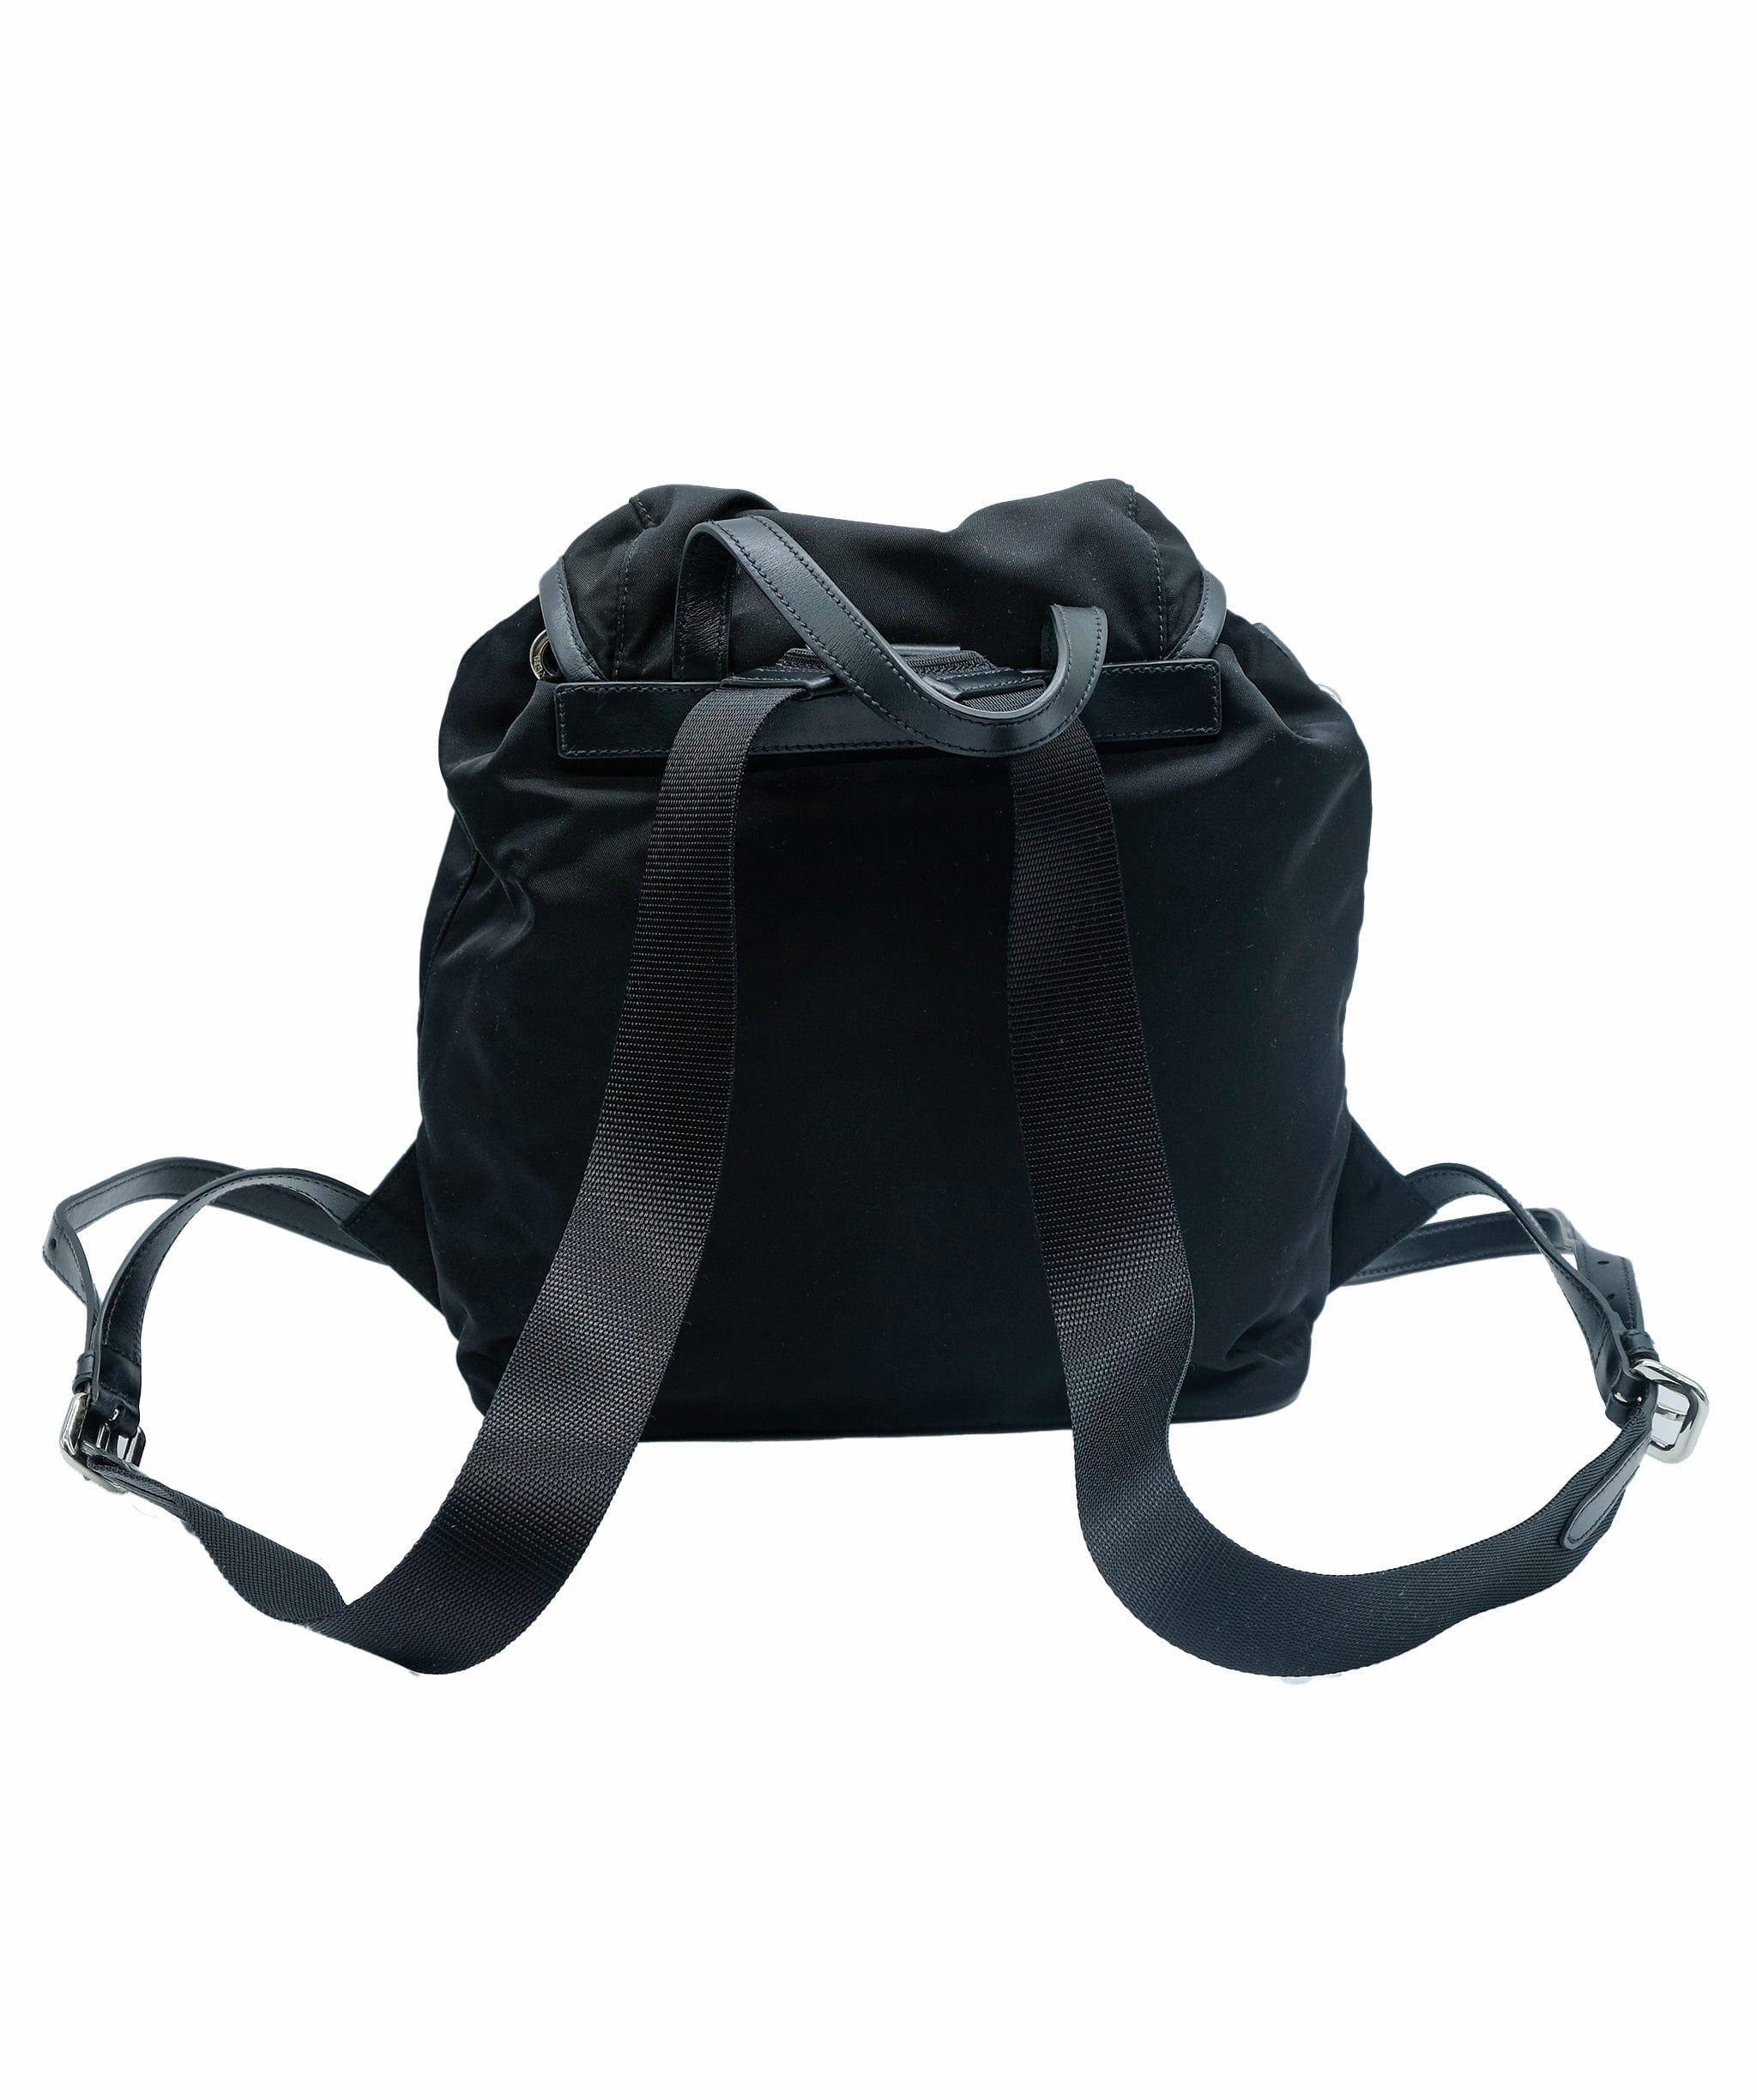 Prada Prada Backpack Black REL1007